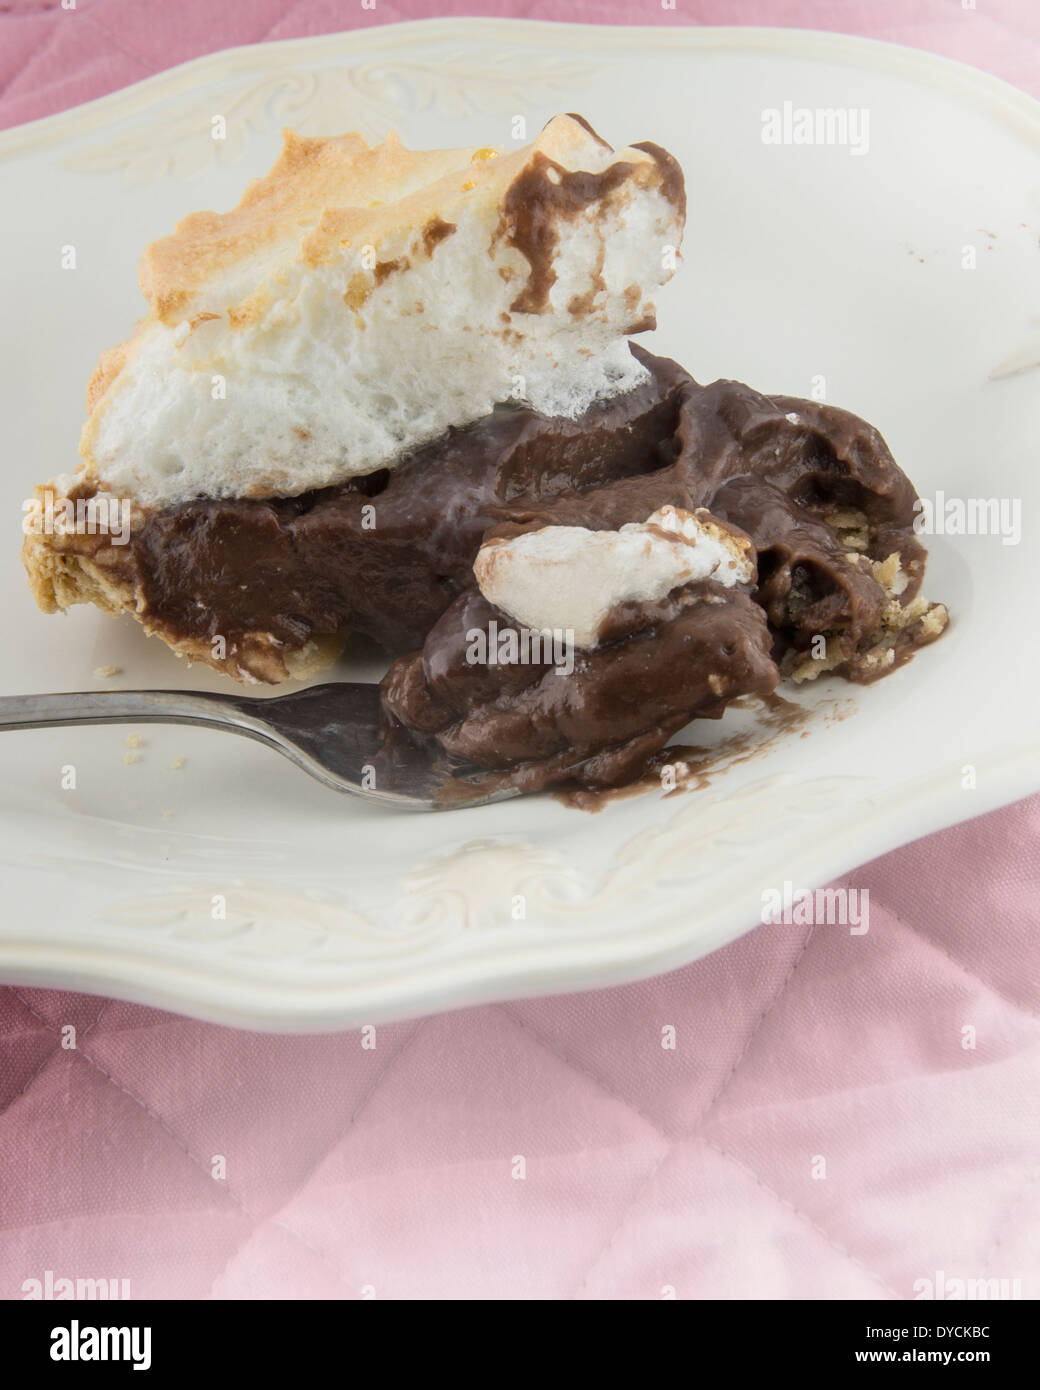 Ein Stück frisch gebackenen hausgemachten Schokoladen Baiser Kuchen auf einem weißen Teller mit Gabel. Stockfoto